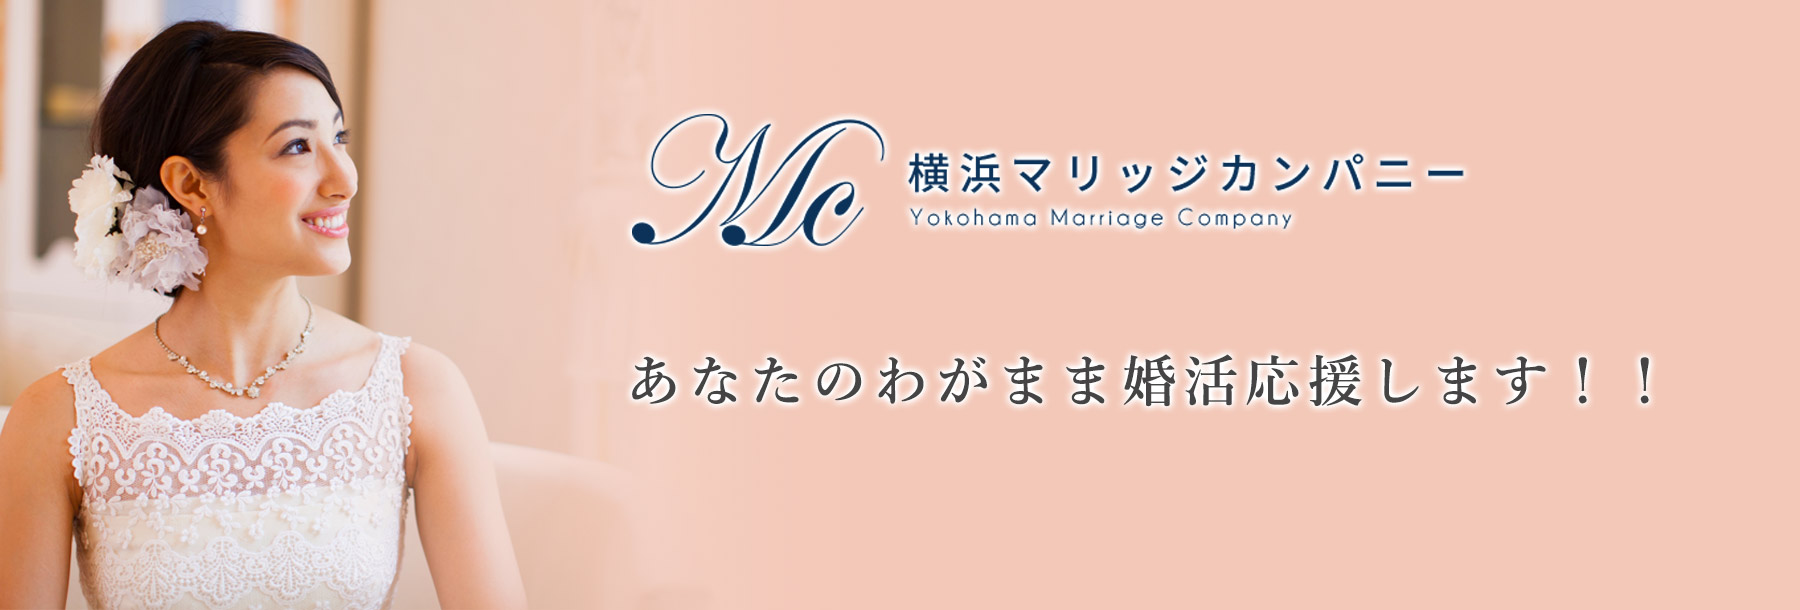 横浜マリッジカンパニーはわがまま婚活を応援します。